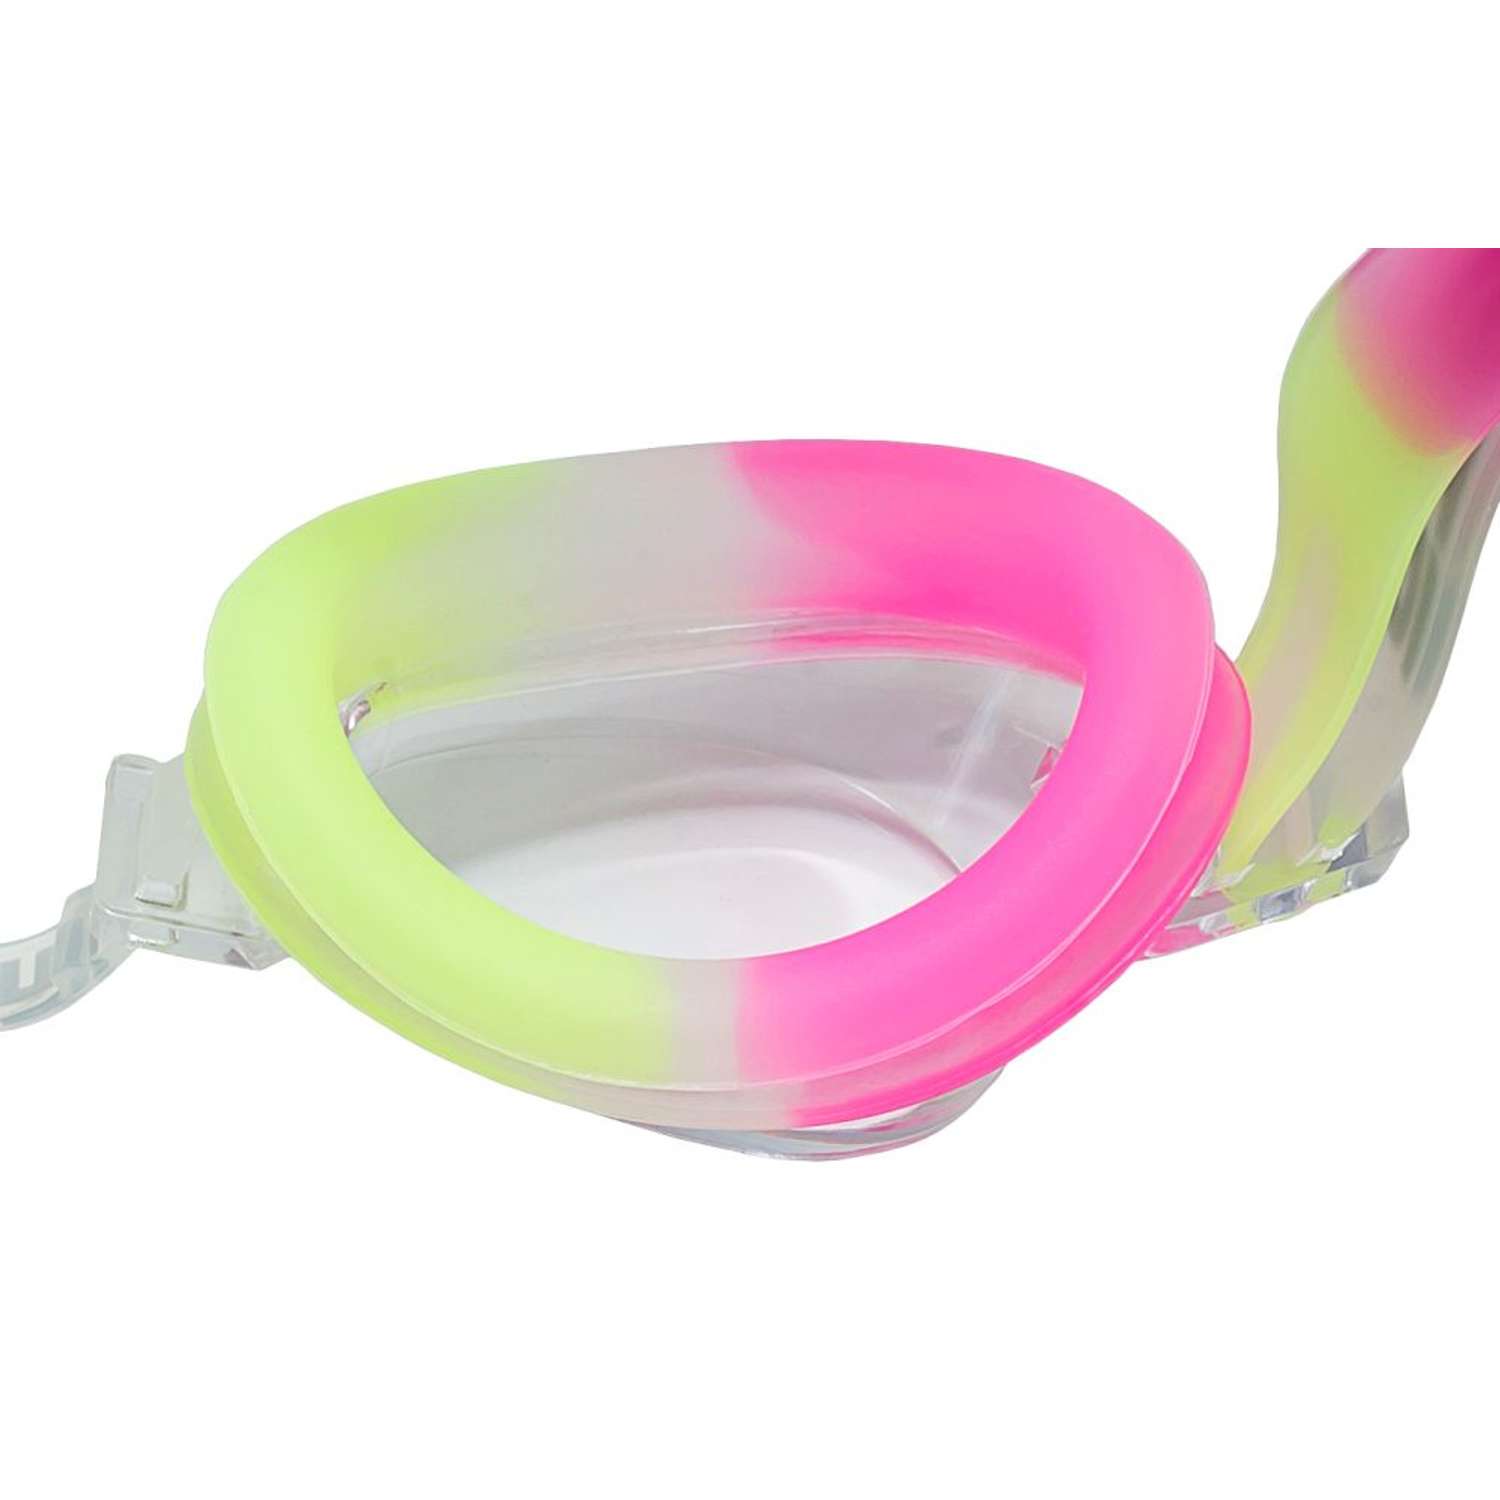 Очки для плавания детские Atemi S307 от 4 до 12 лет цвет желтый/розовый/белый - фото 2